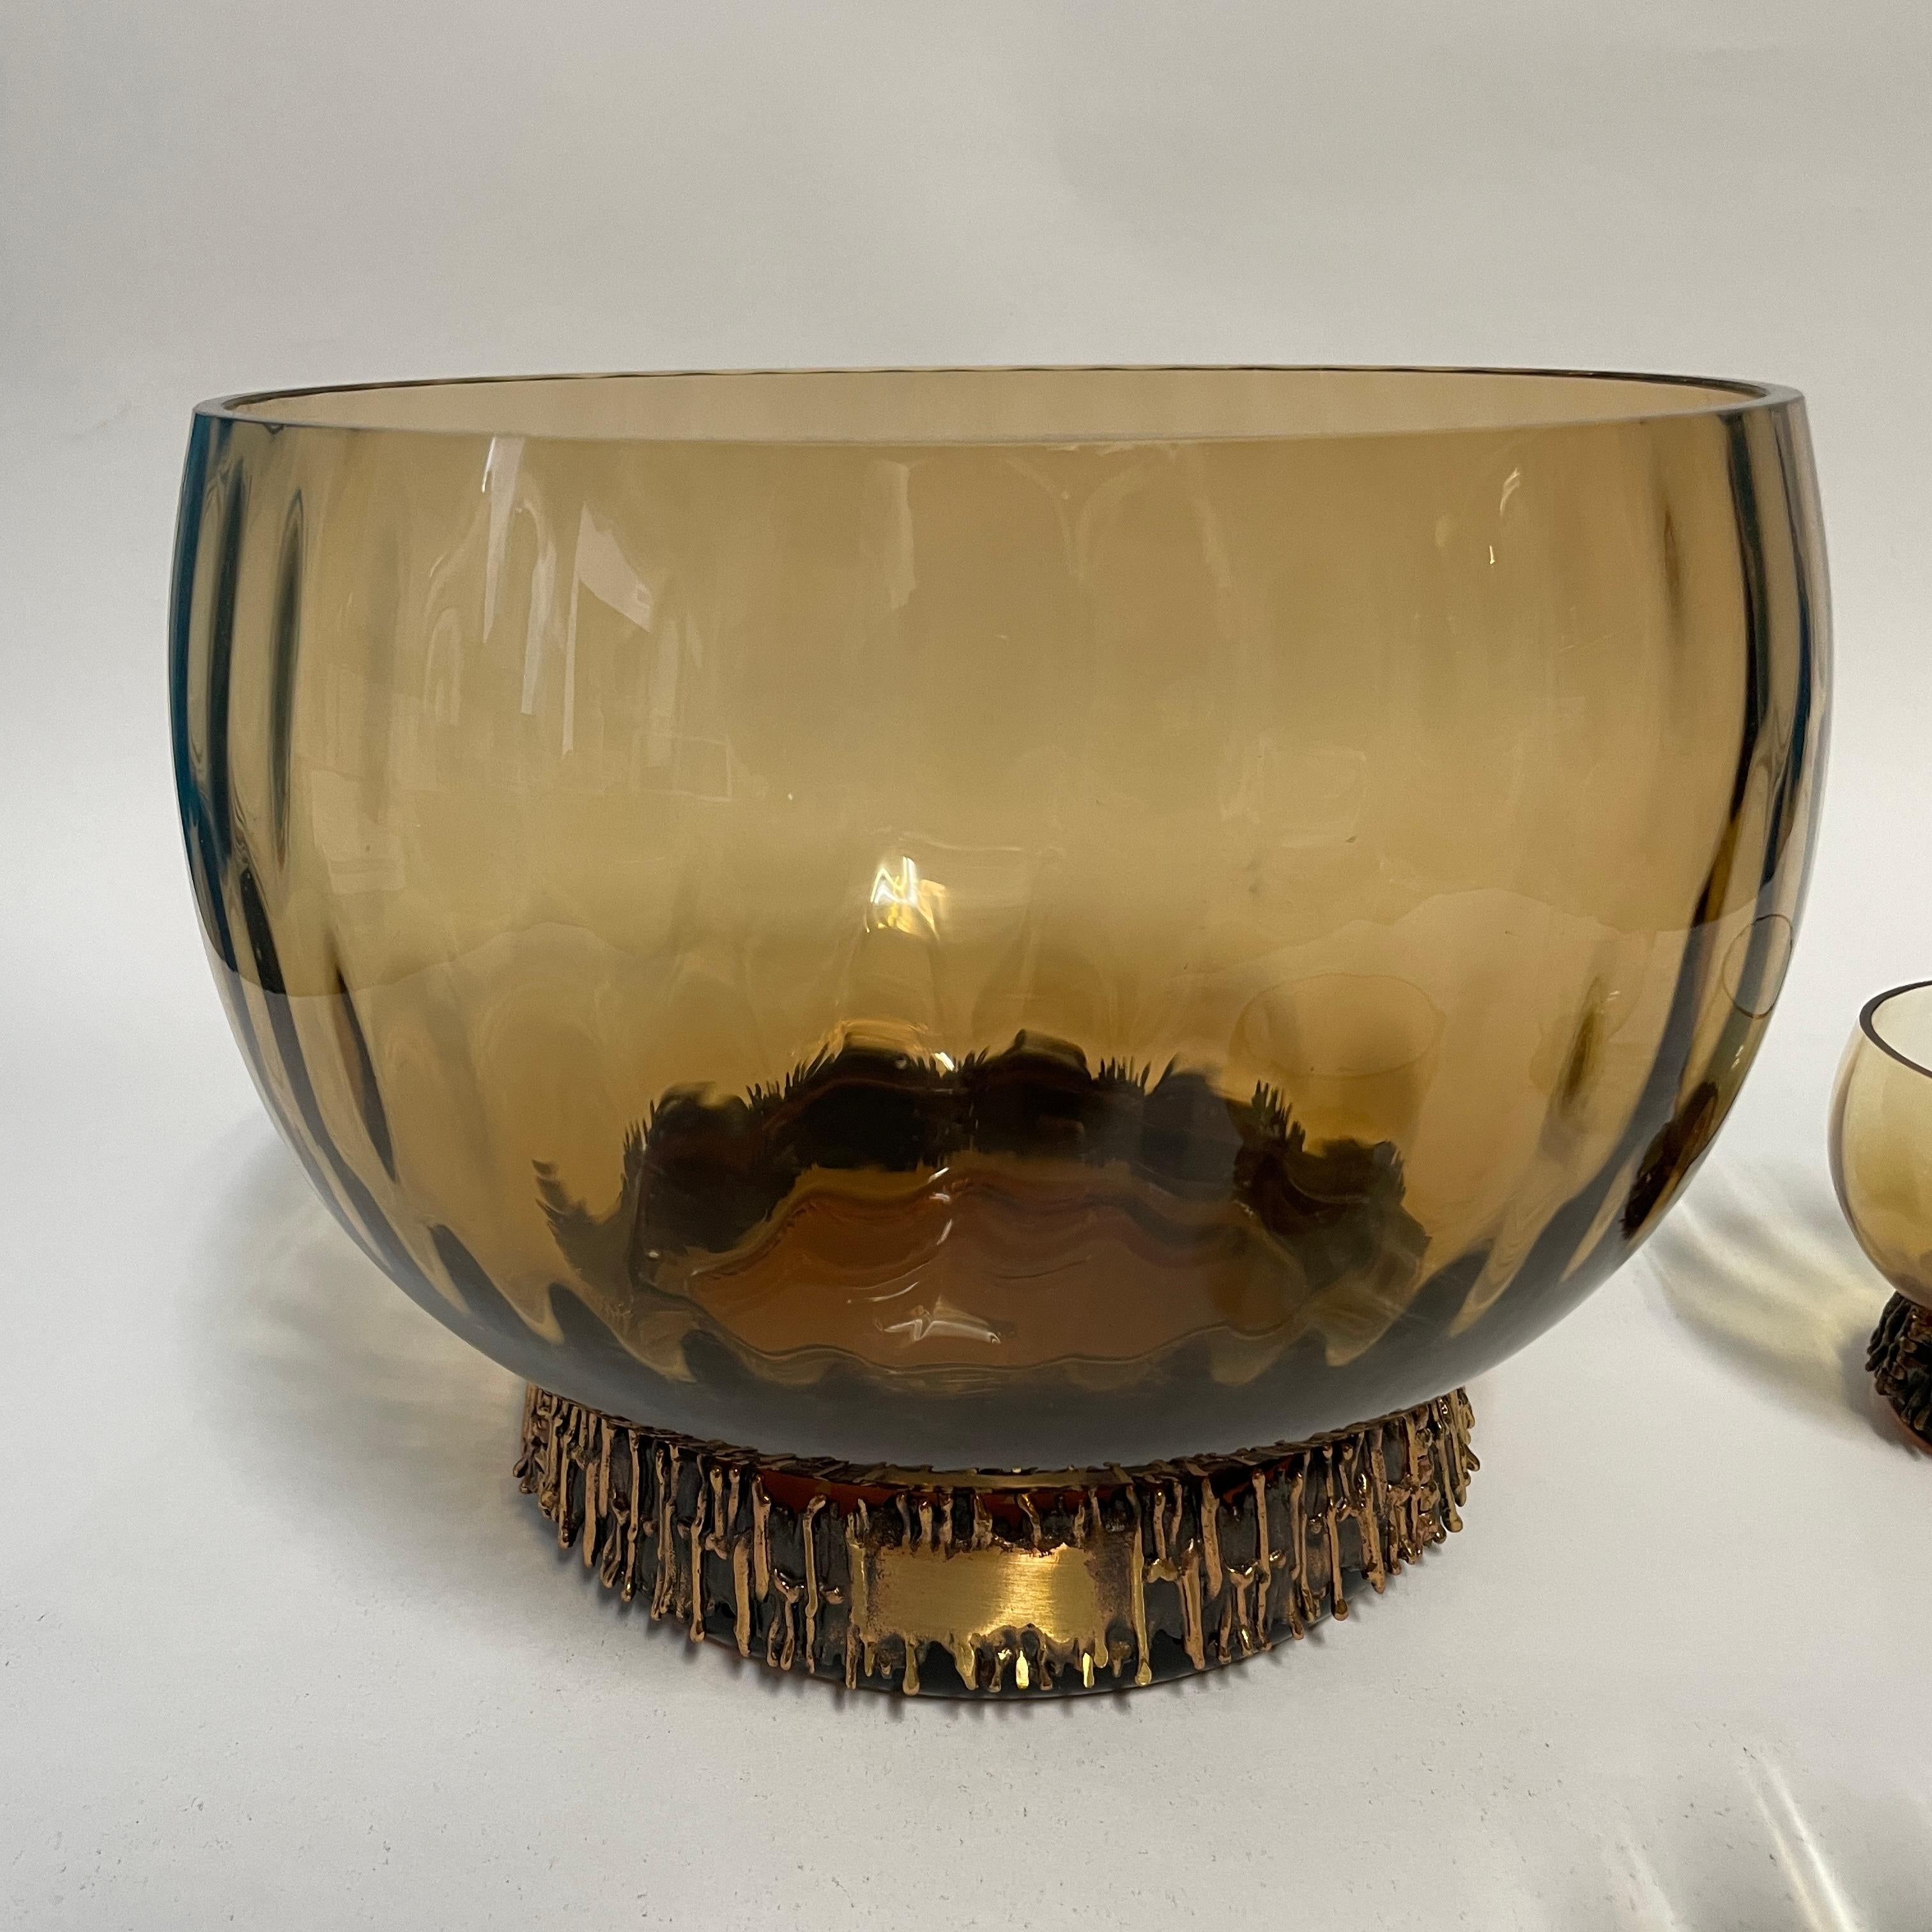 Die Vase Kaarna und die Punschgläser von Kumela wurden von Pentti Sarpaneva entworfen und in den 1960er Jahren hergestellt. Das Glas erhebt sich aus einem bronzenen Bügel und besticht durch sein schönes, organisches, rundes Design. 
Die Details des